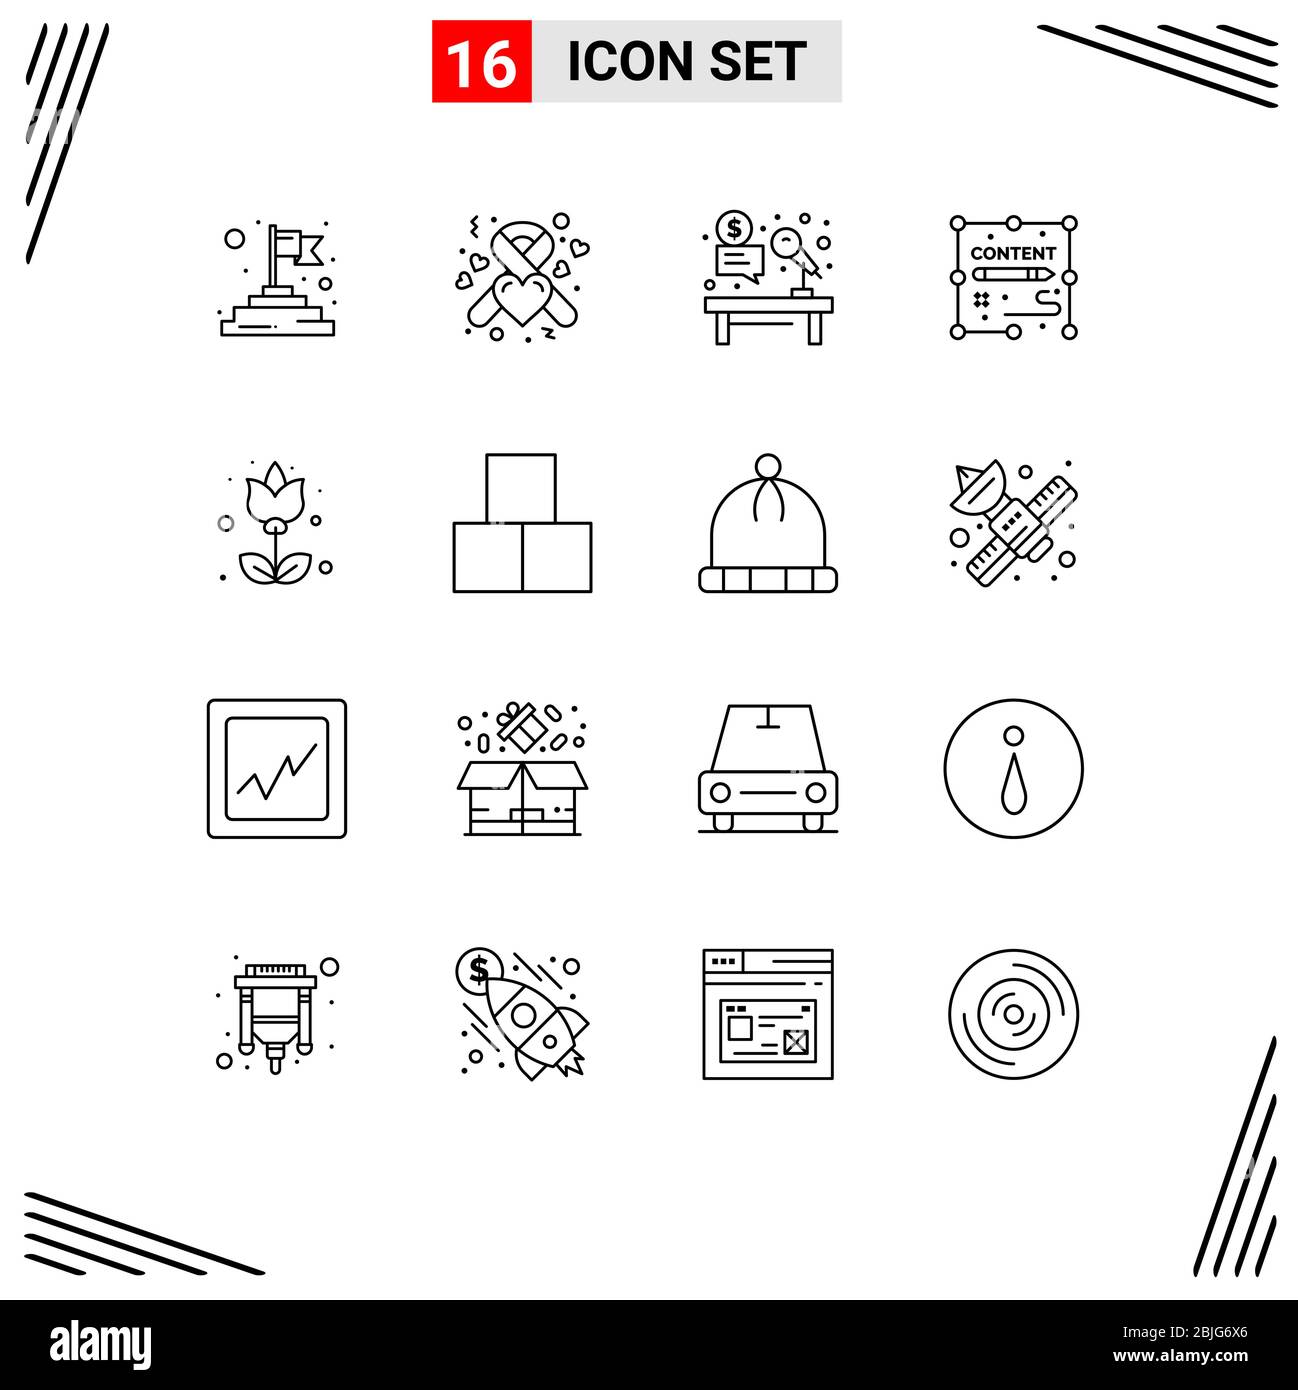 Universal Icon Symbols Groupe de 16 contours modernes de la flore, de la conception, de la vente aux enchères, de la duplication, du contenu Editable Vector Design Elements Illustration de Vecteur